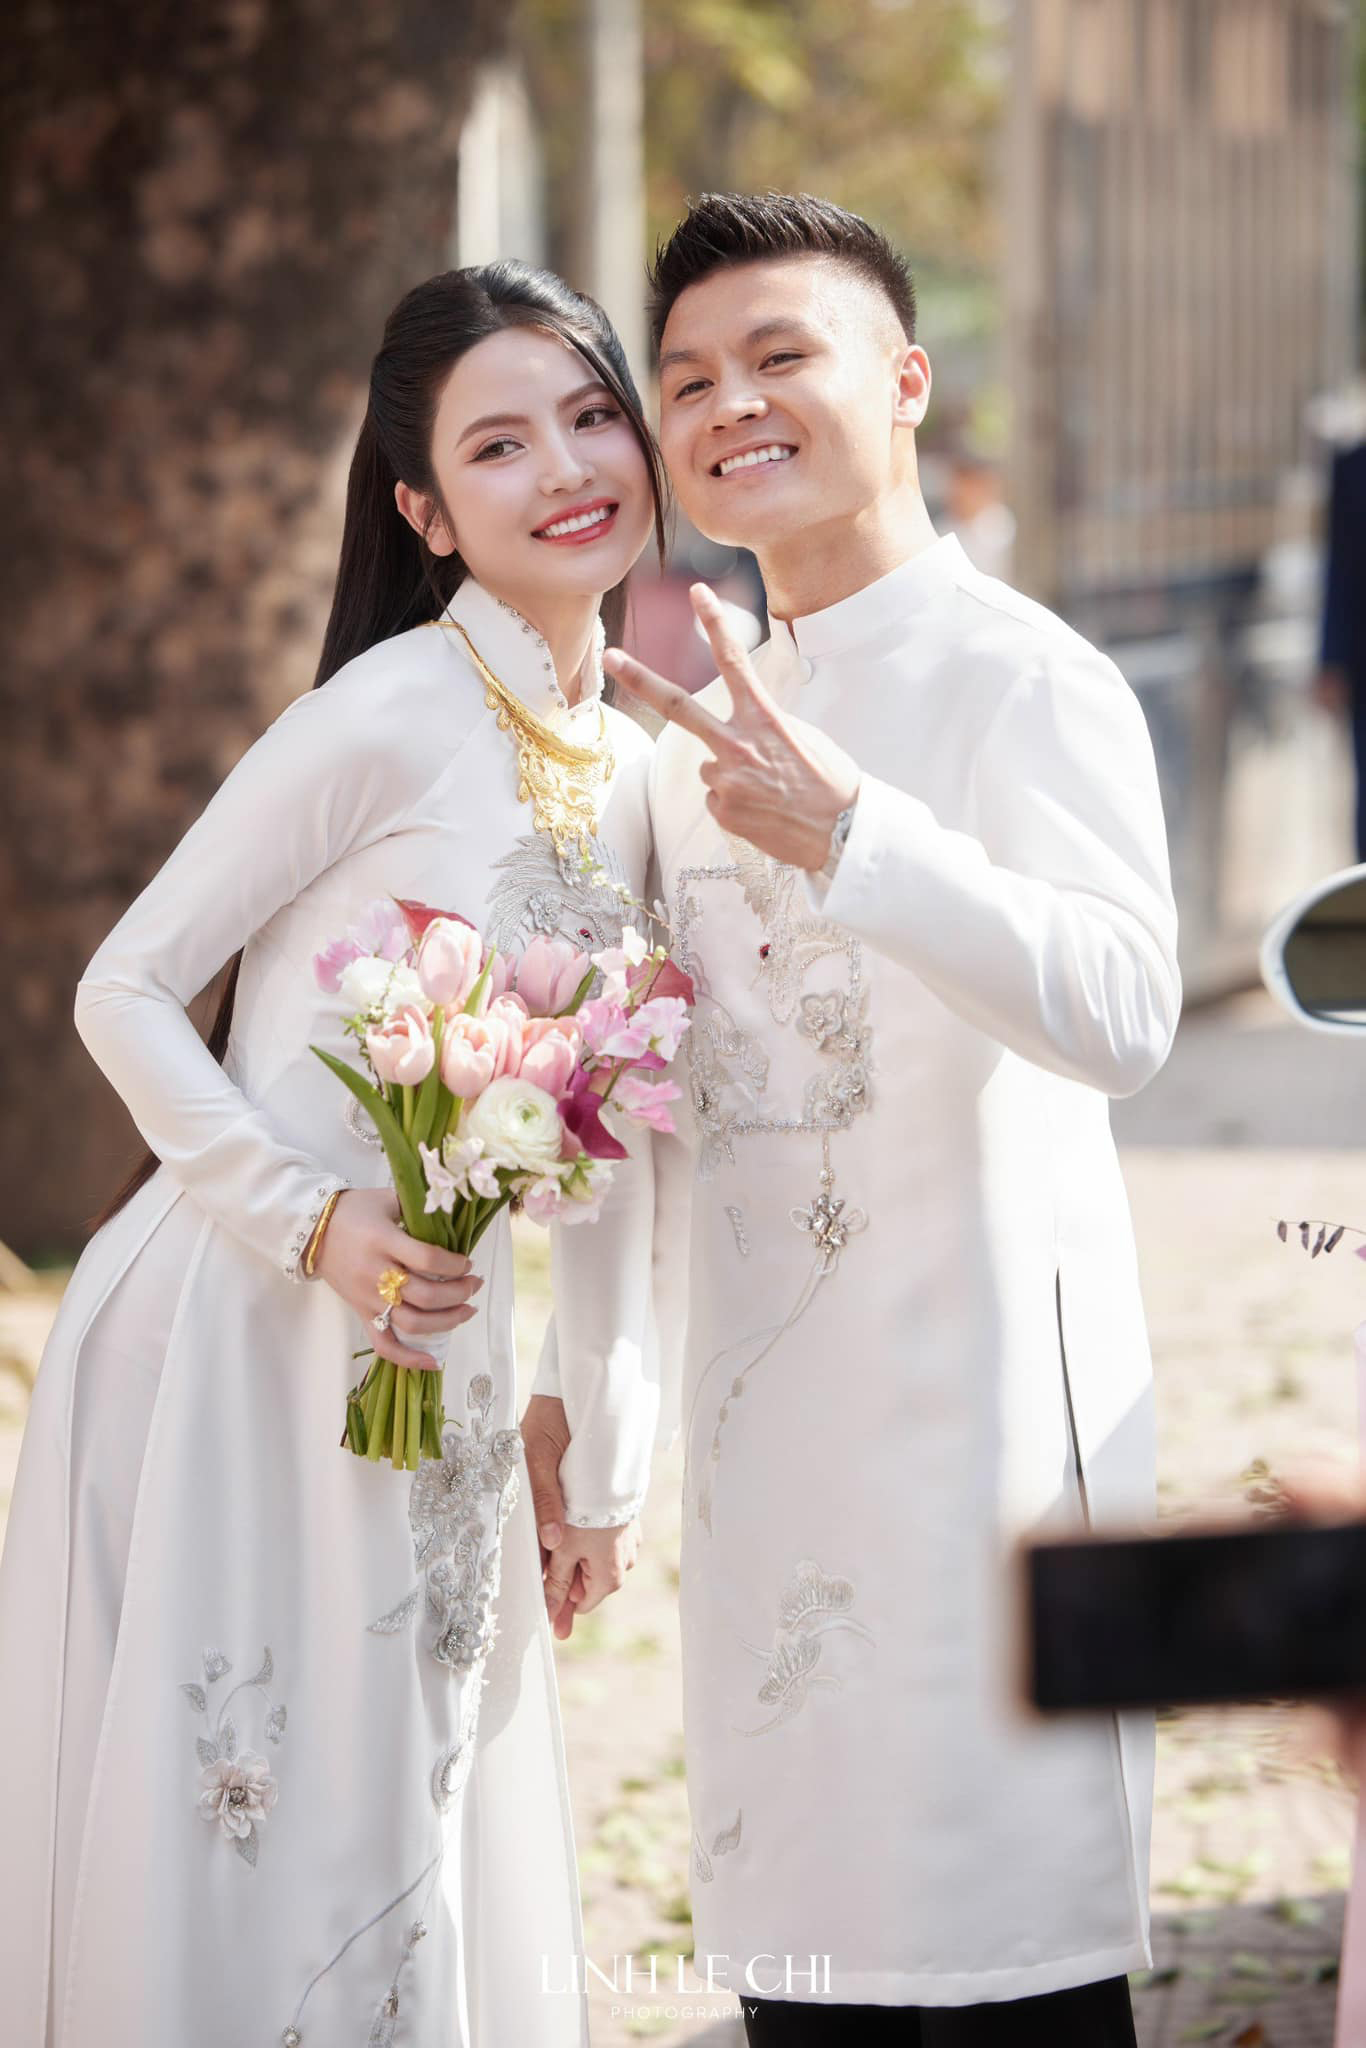 Ngày 6/4 tới, cặp đôi sẽ tổ chức tiệc cưới tiếp theo ở Hà Nội.